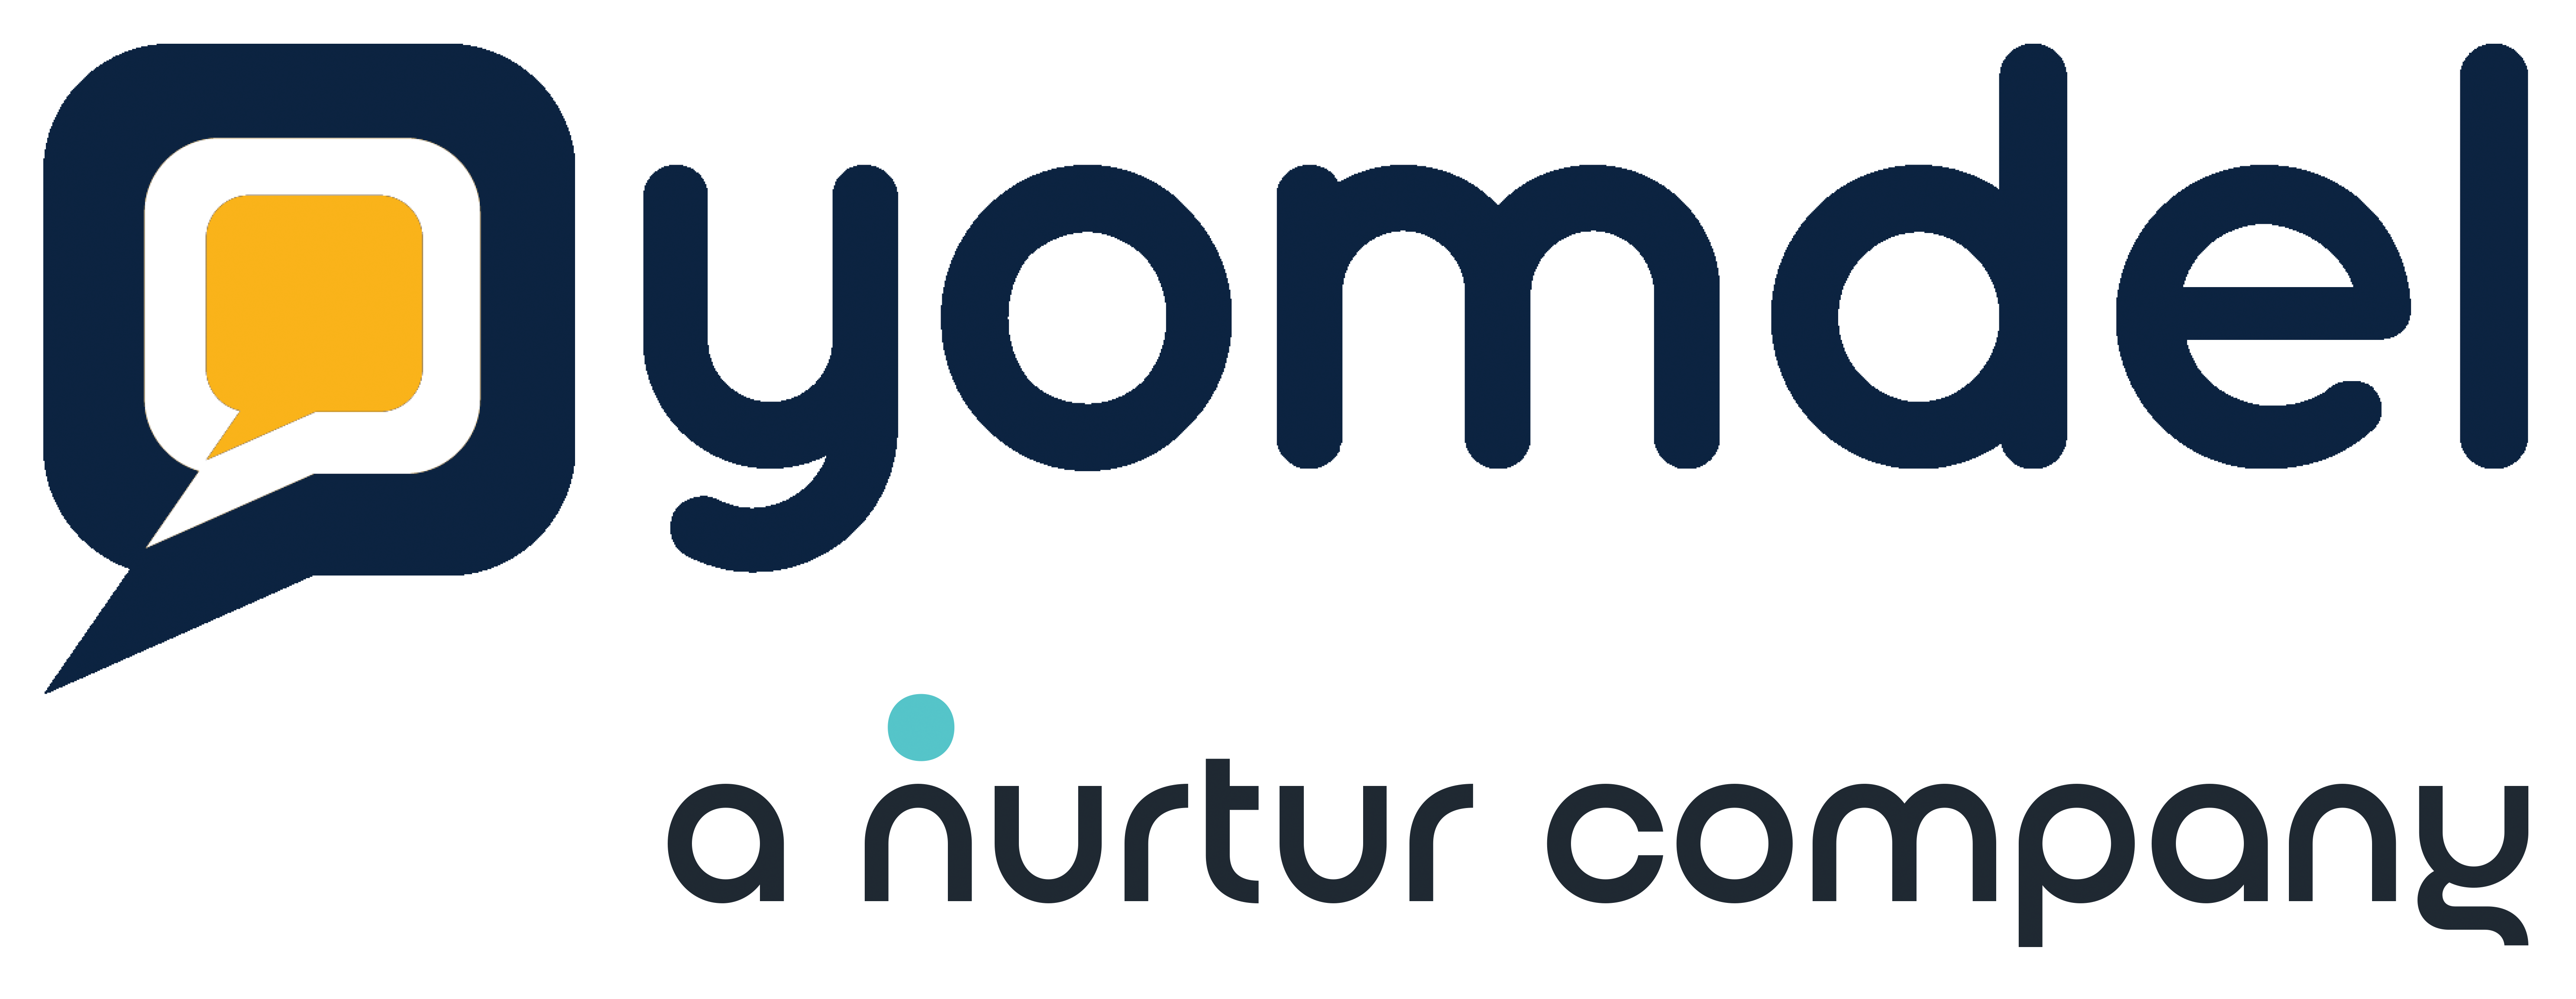 yomdel a nurtur company